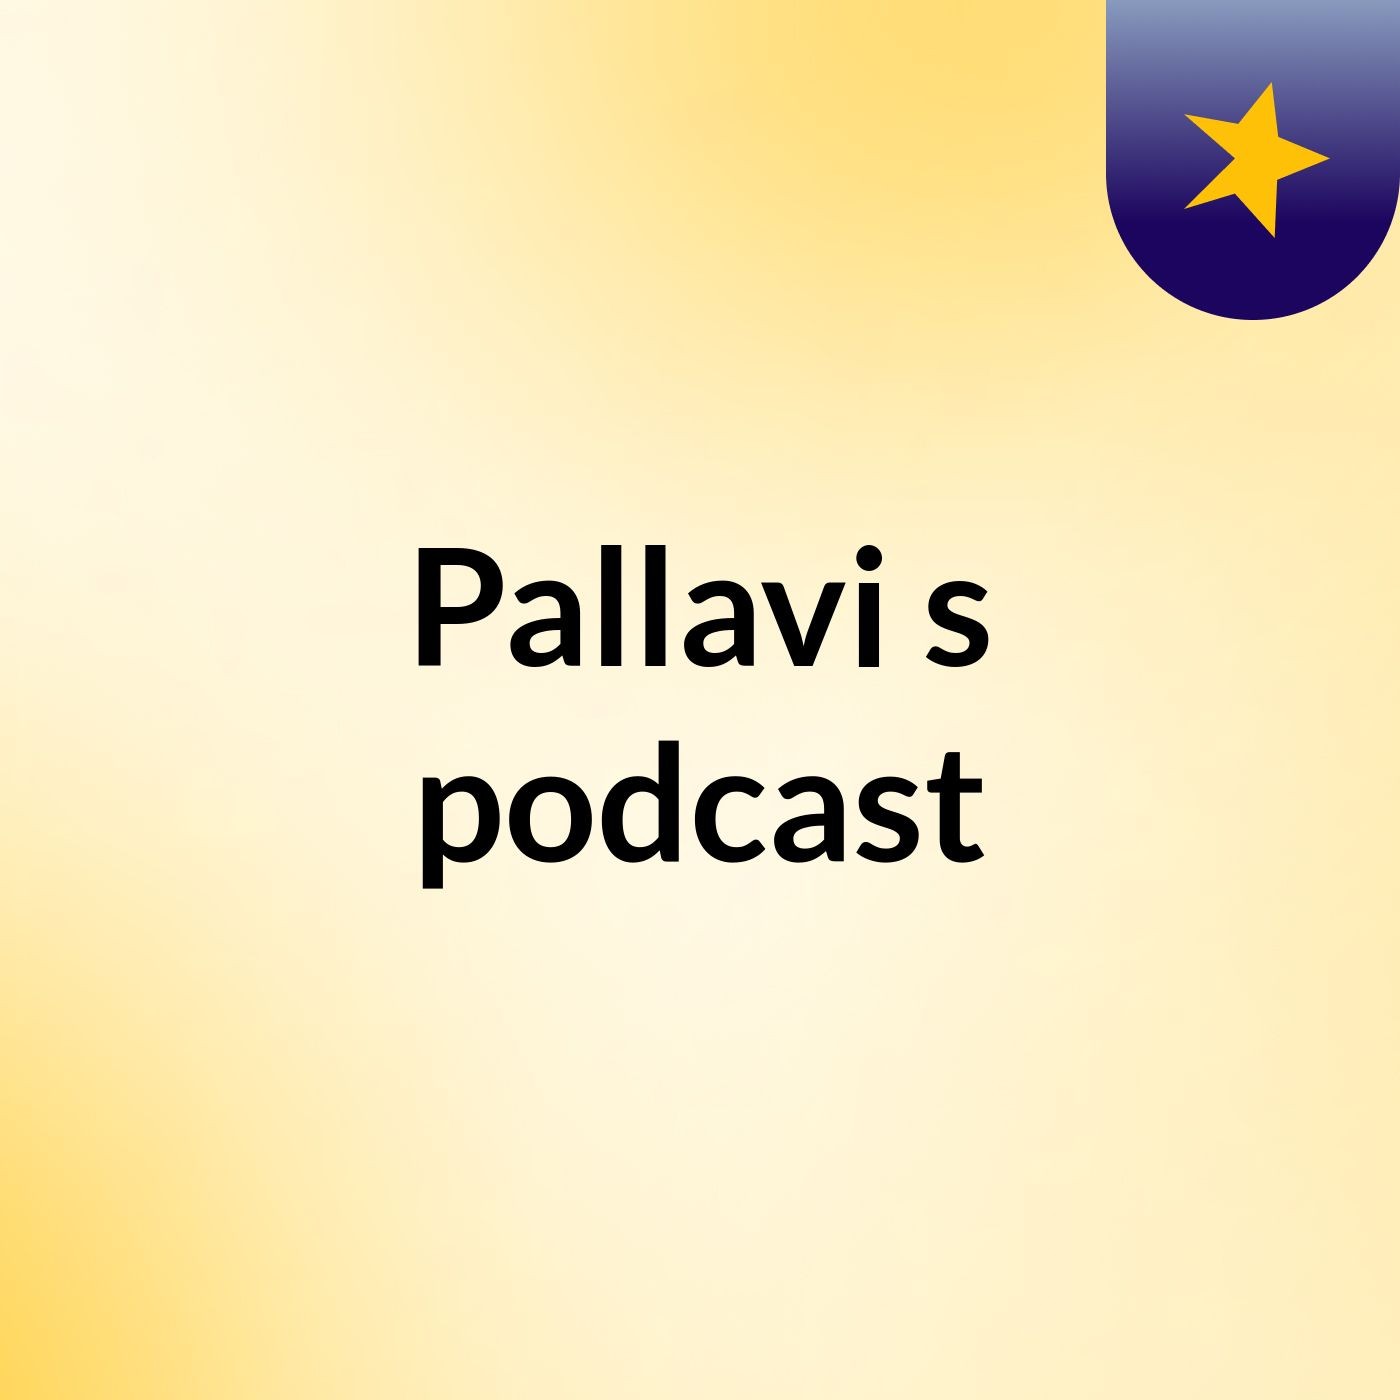 Episode 2 - Pallavi's podcast